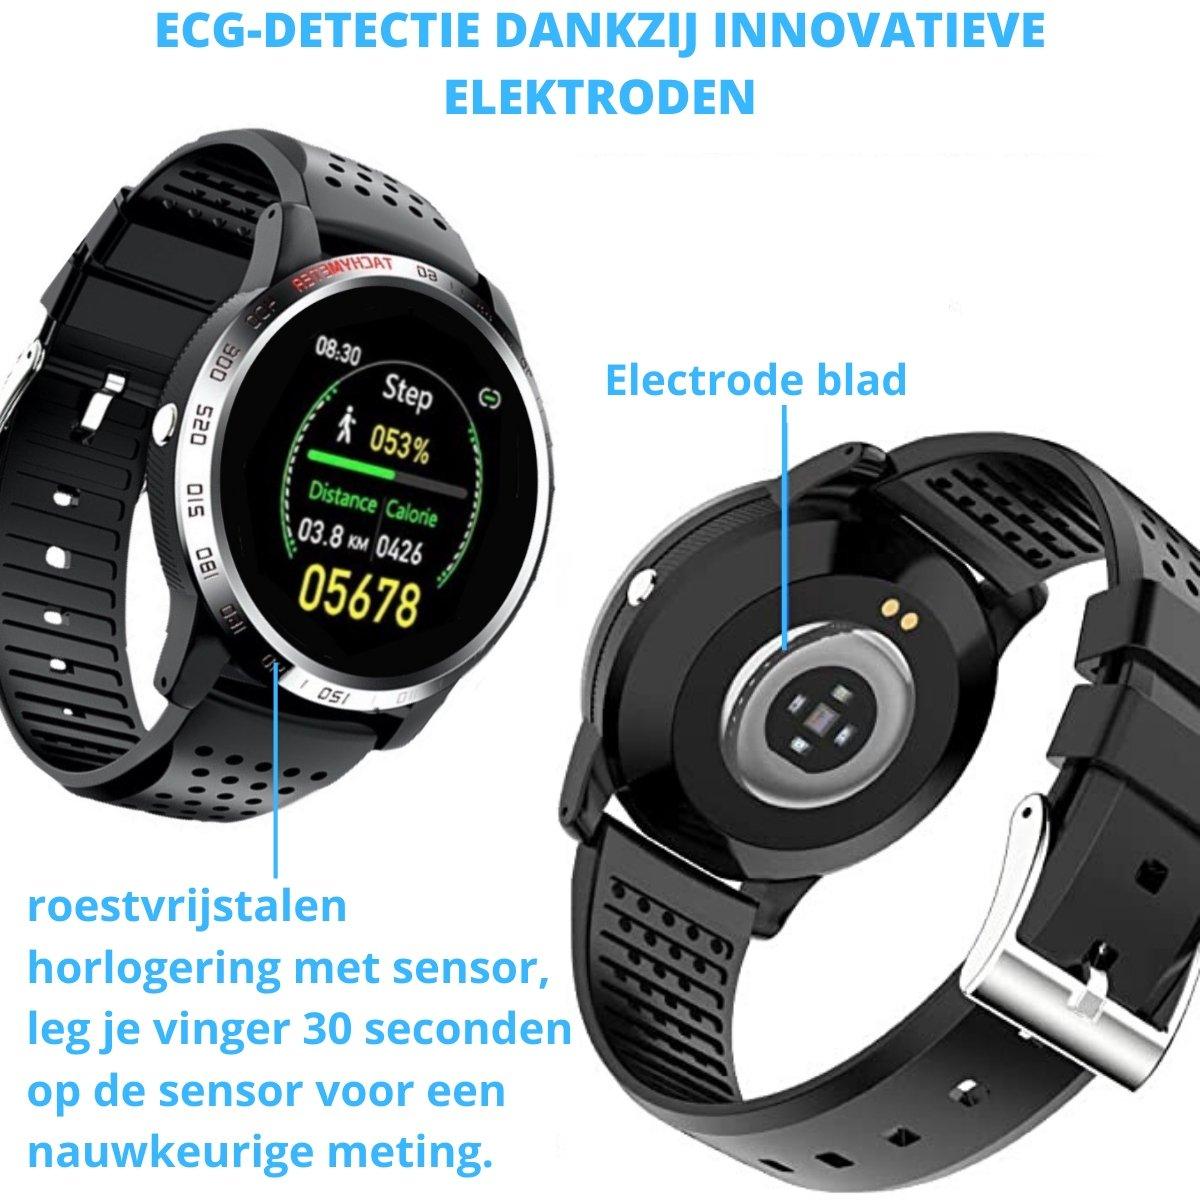 ECG detectie dankzij innovatieve elektroden. roestvrijstaal en horlogering sensor.